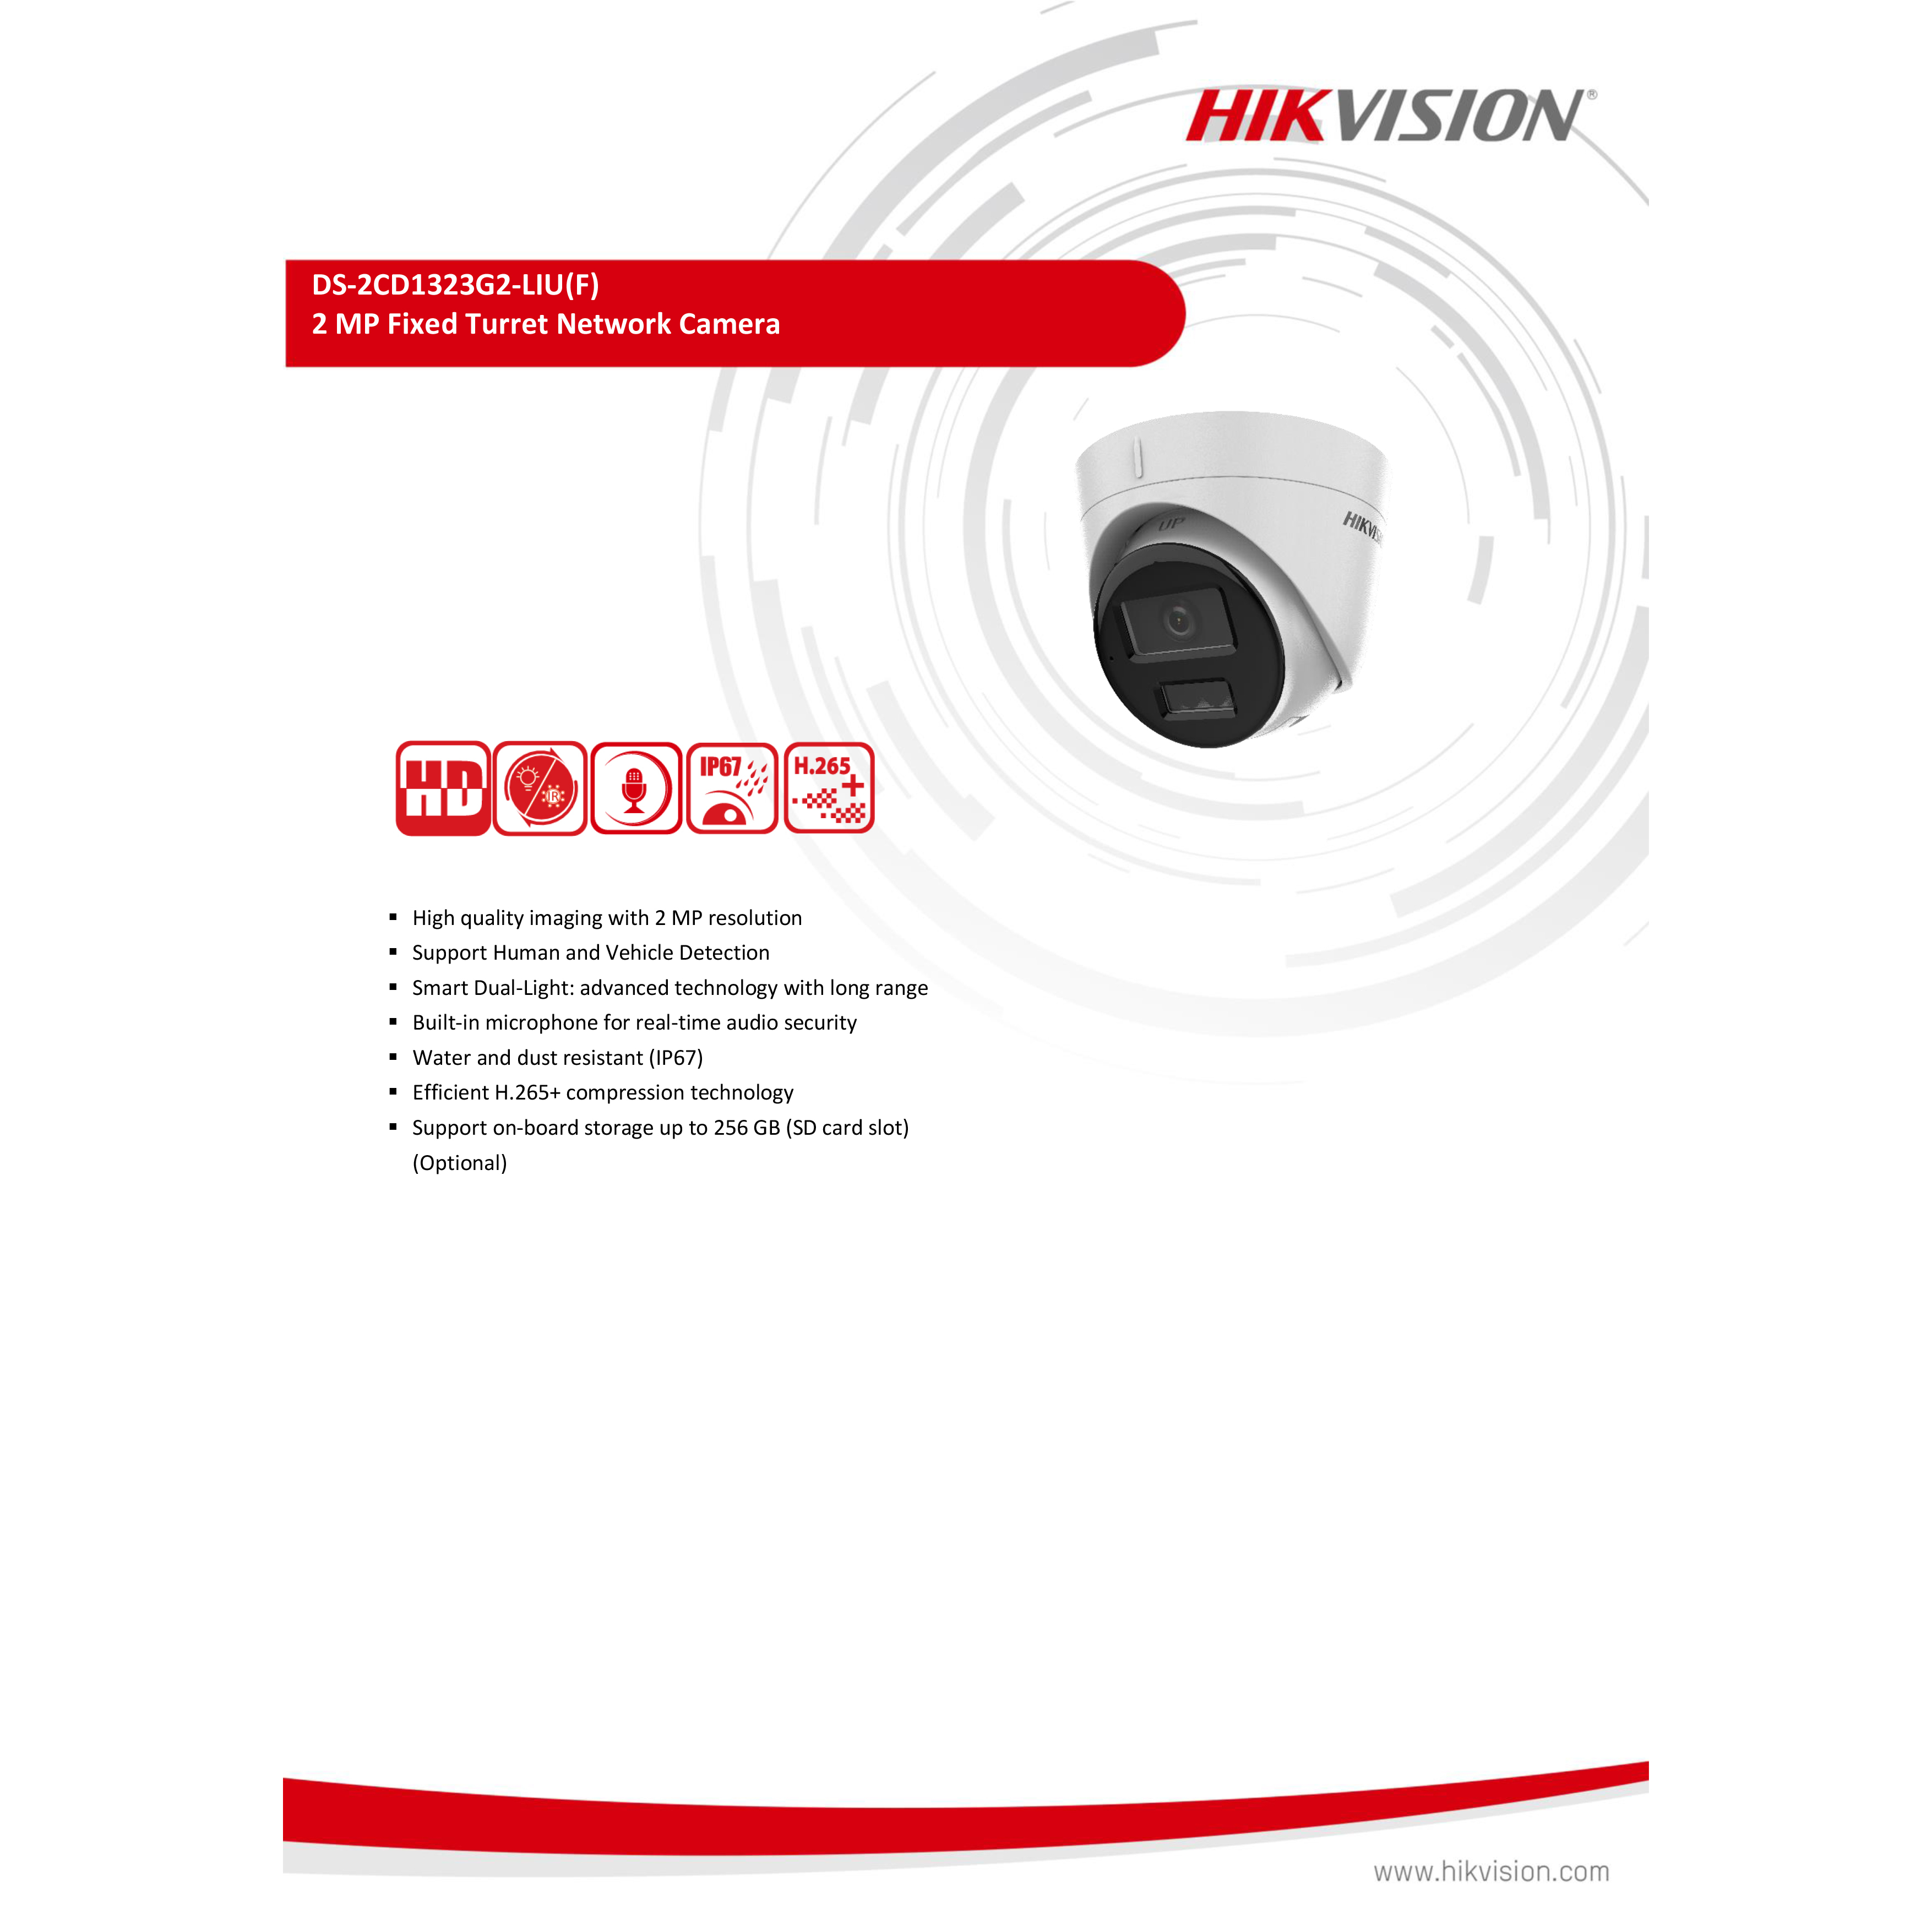 hikvision-ds-2cd1323g2-liu-2-8-mm-กล้องวงจรปิดระบบ-ip-2-mp-มีไมค์ในตัว-เลือกปรับโหมดเป็นภาพสี-24-ชม-หรือขาวดำได้